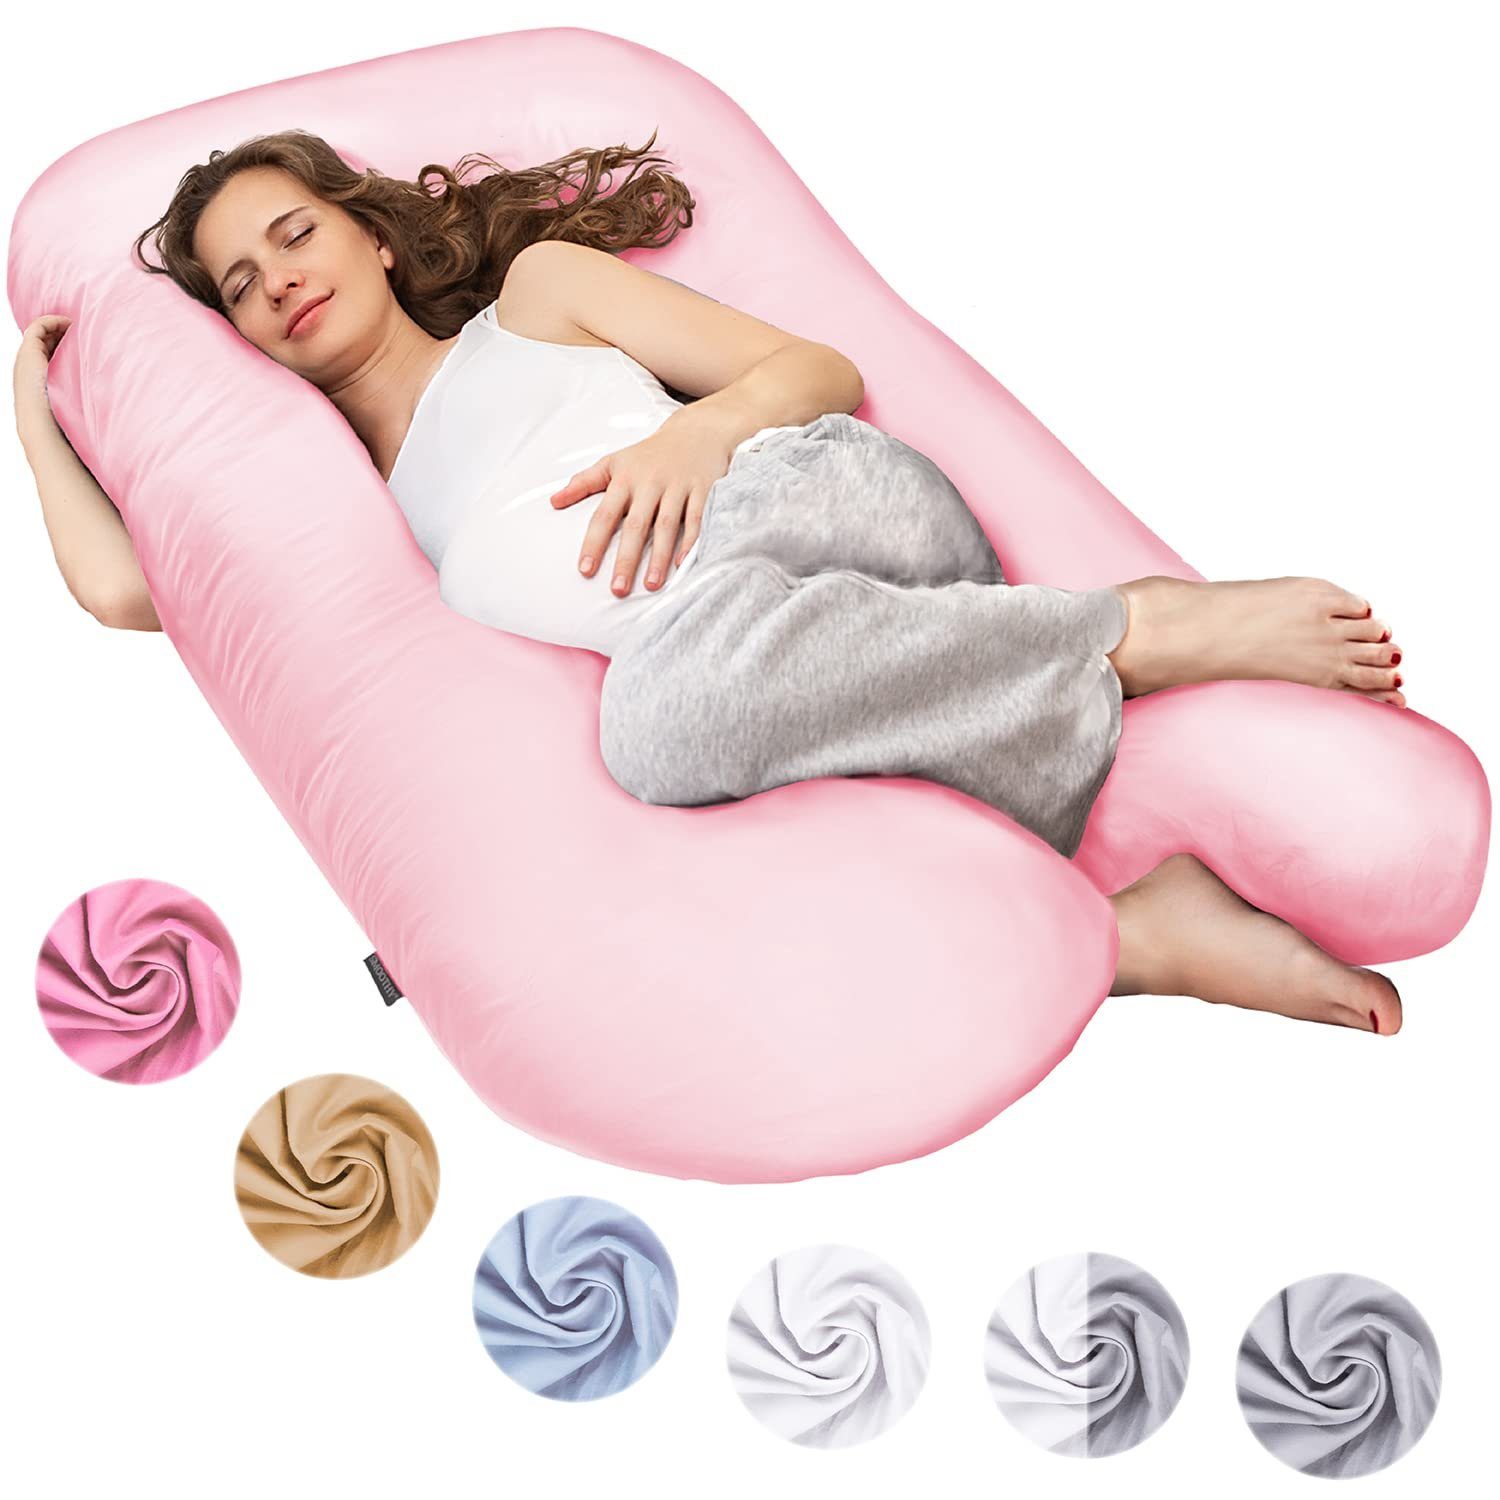 Smoothy Stillkissen Schwangerschaftskissen Lagerungskissen, Baby-Kissen & Stillkissen in U-Form Pink